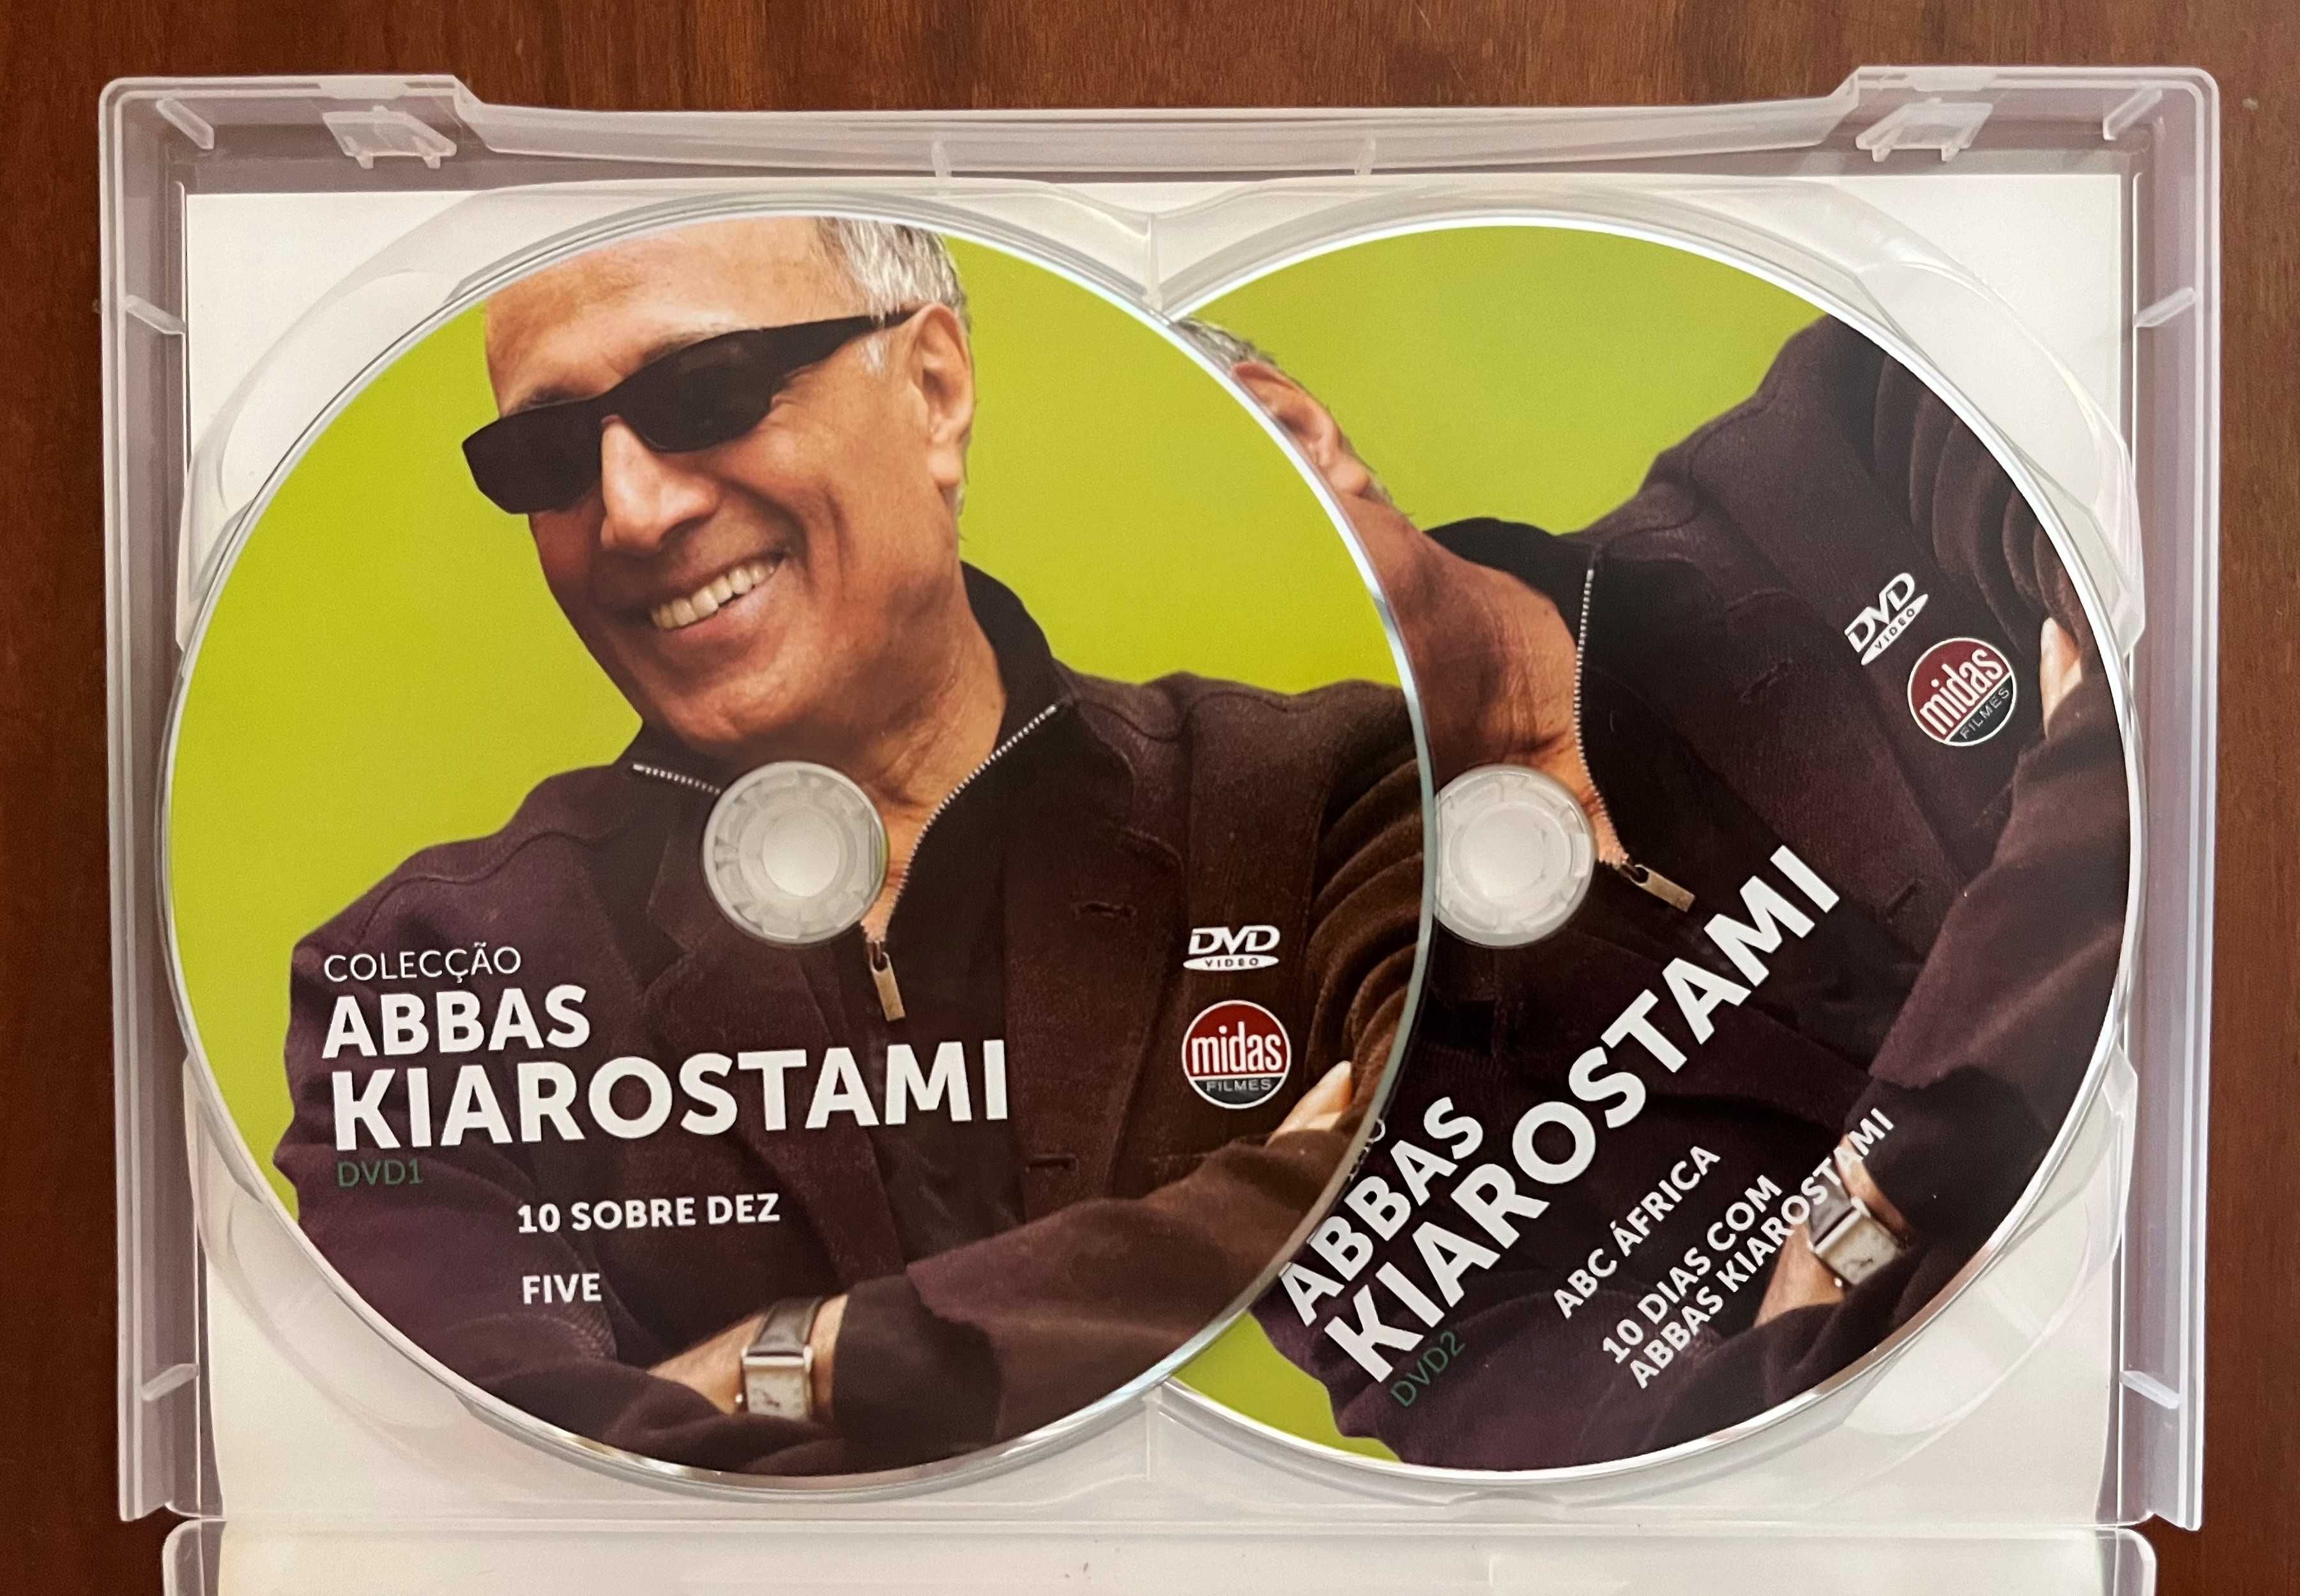 DVD "Colecção Abbas Kiarostami"